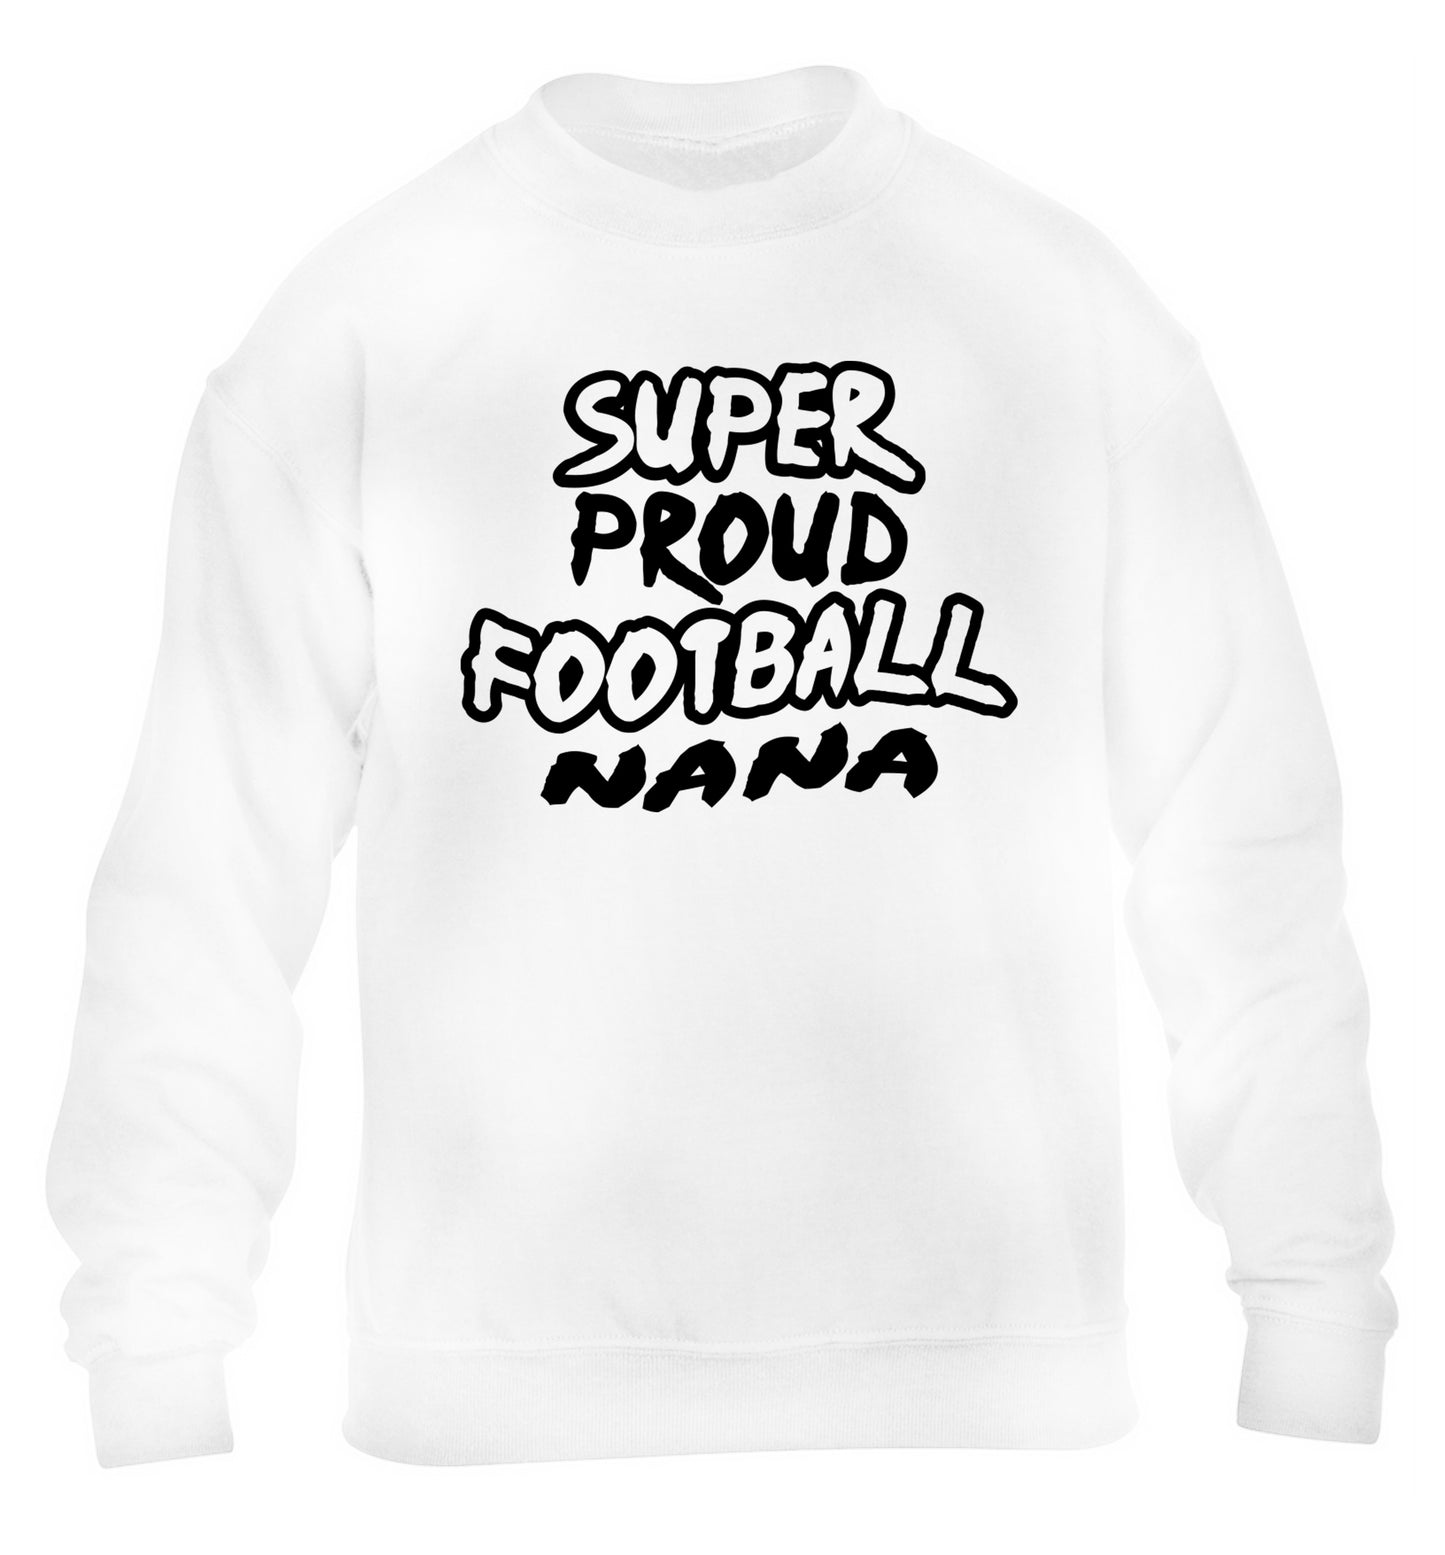 Super proud football nana children's white sweater 12-14 Years